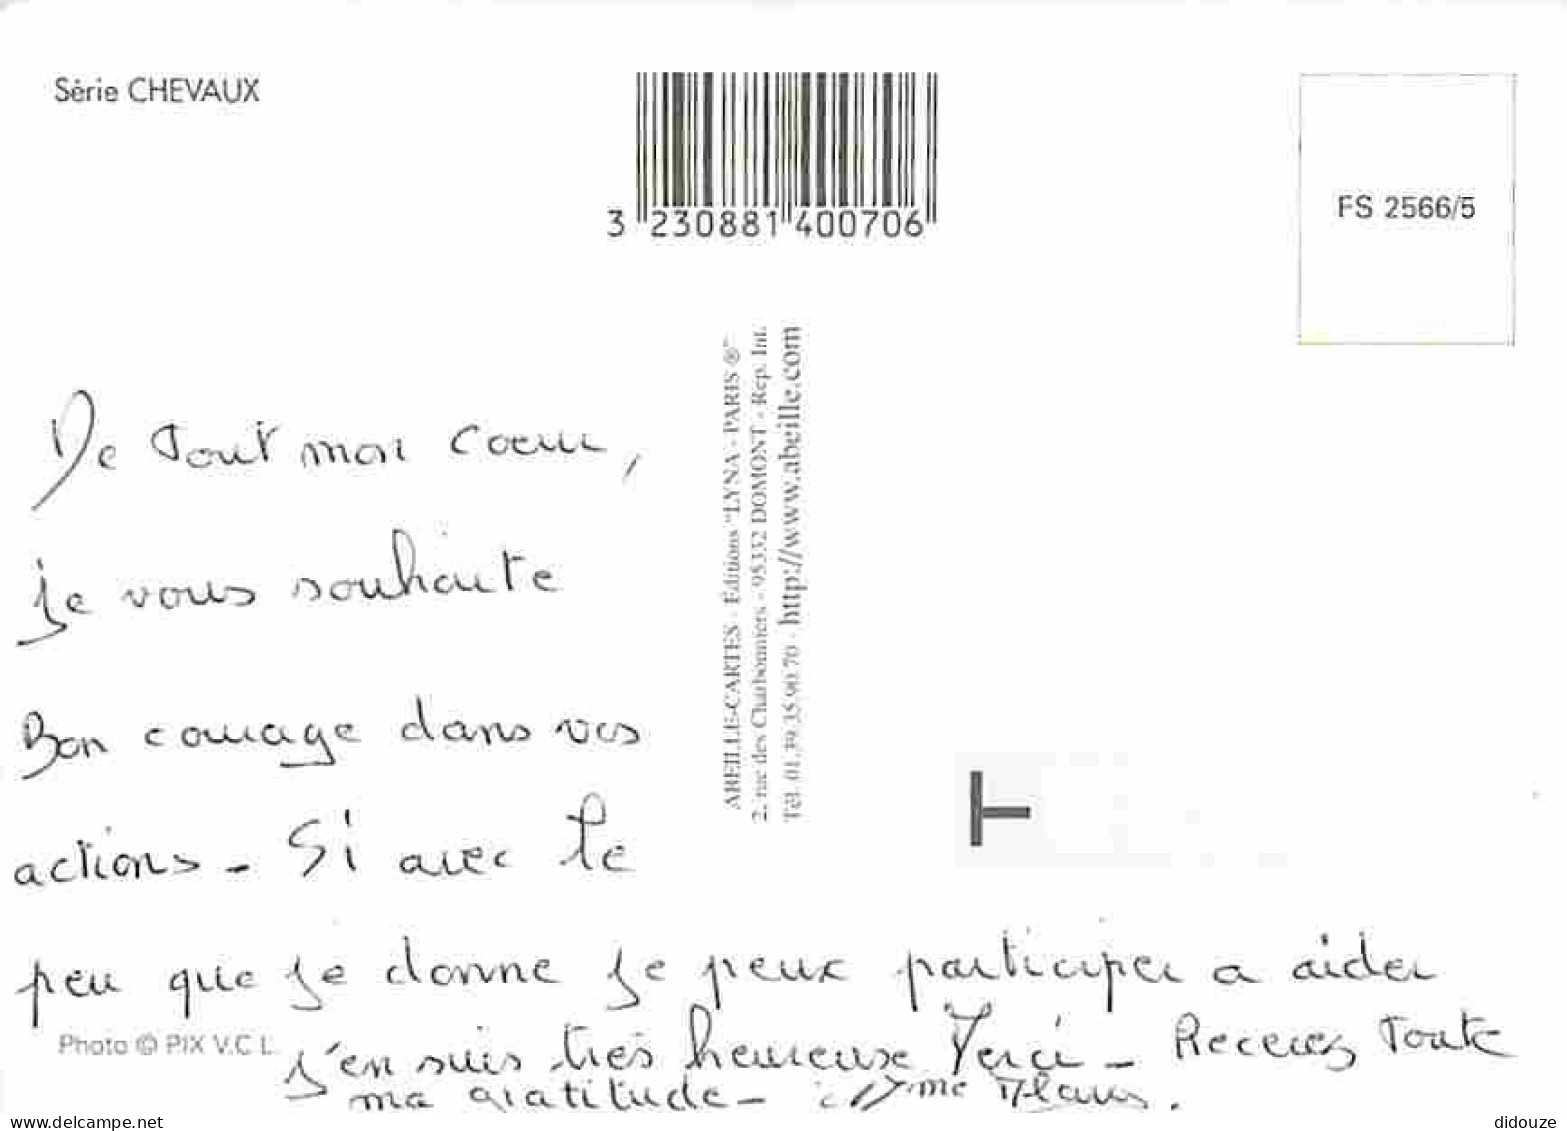 Animaux - Chevaux - Jument Et Son Poulain - Voir Scans Recto Verso  - Horses